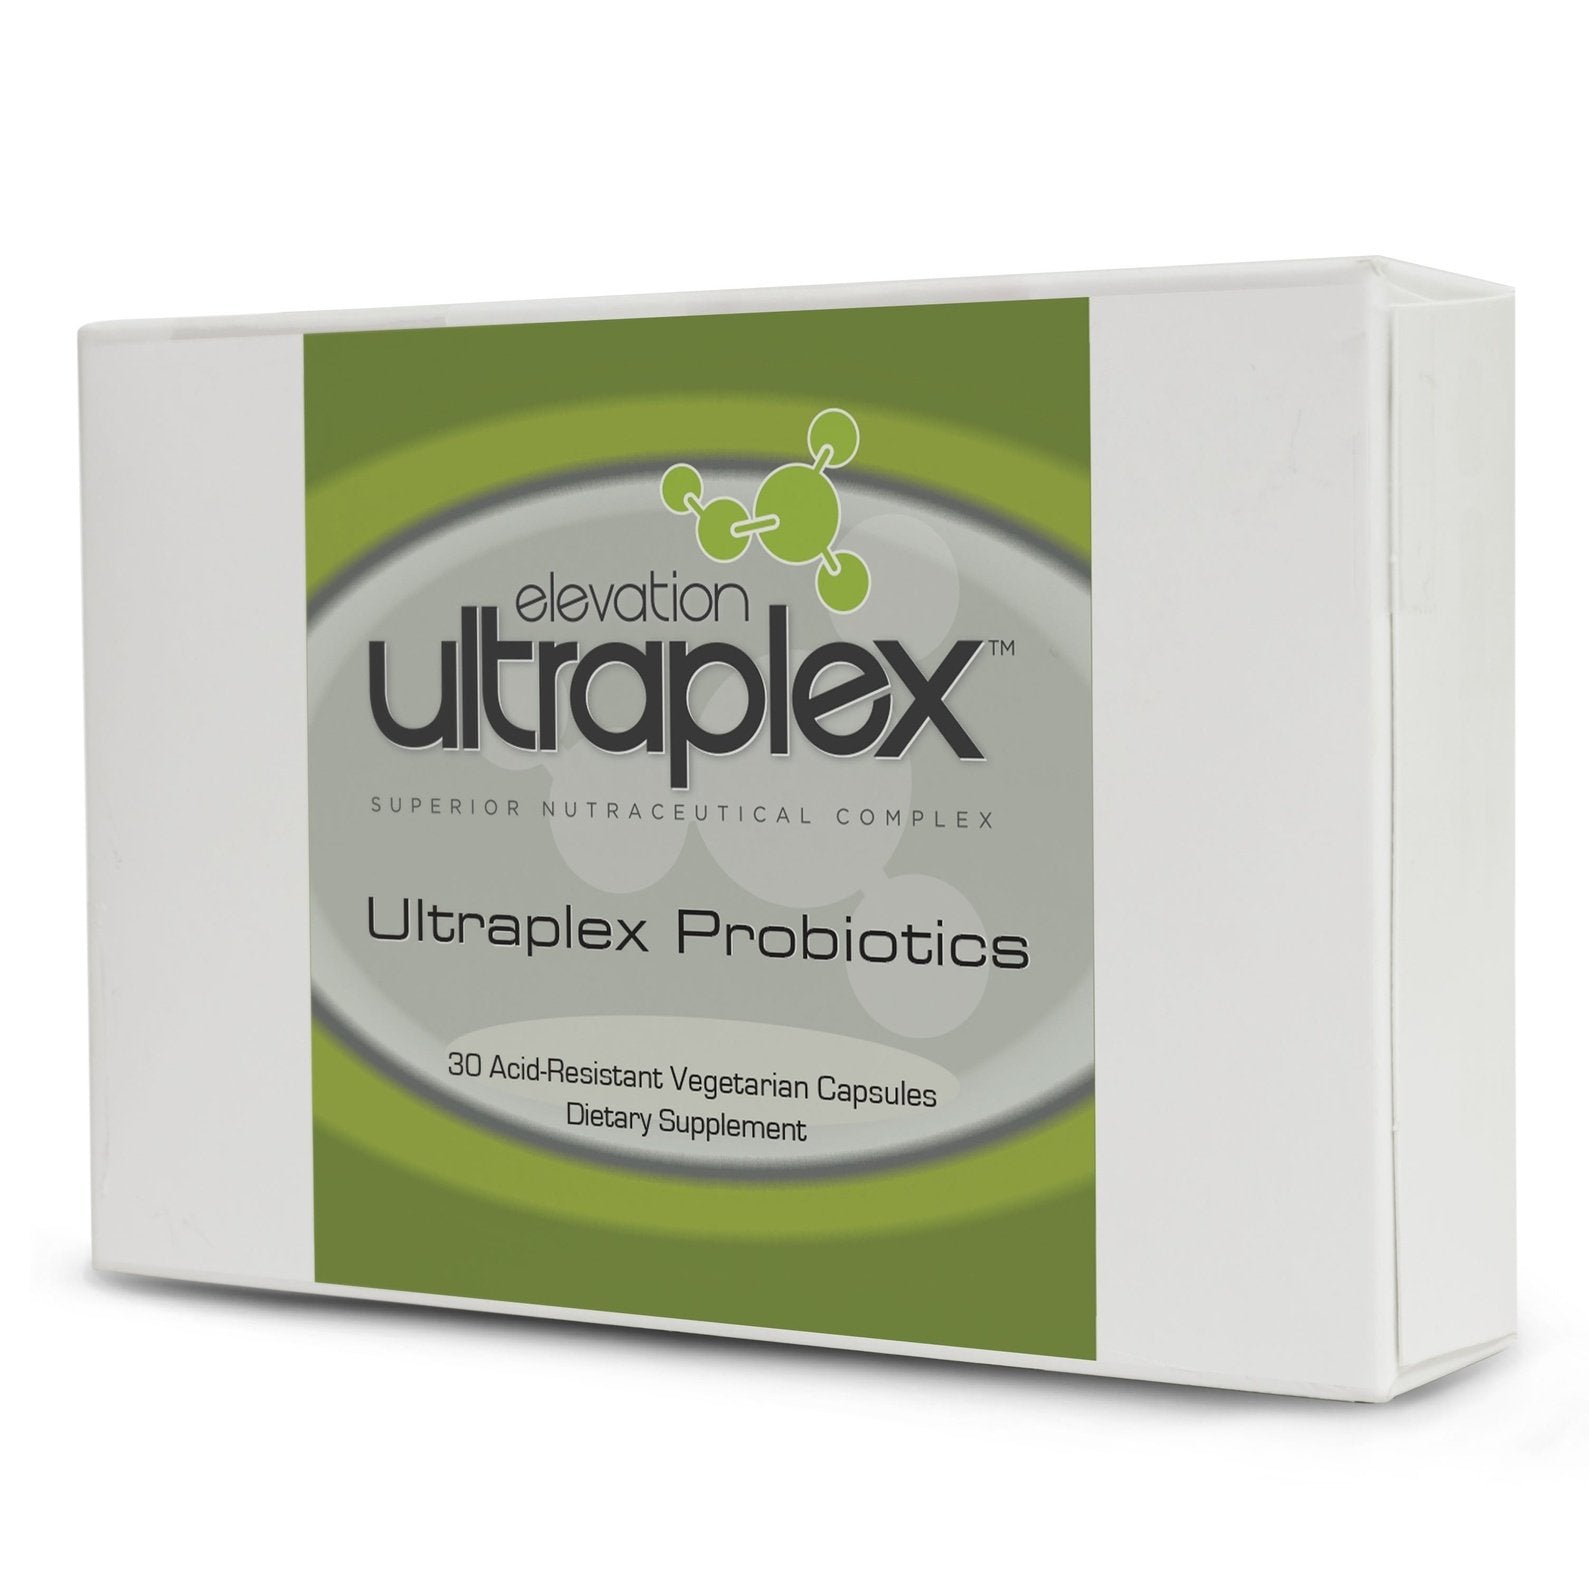 Ultraplex Probiotics 30 Acid-Resistant Vegetarian Capsules